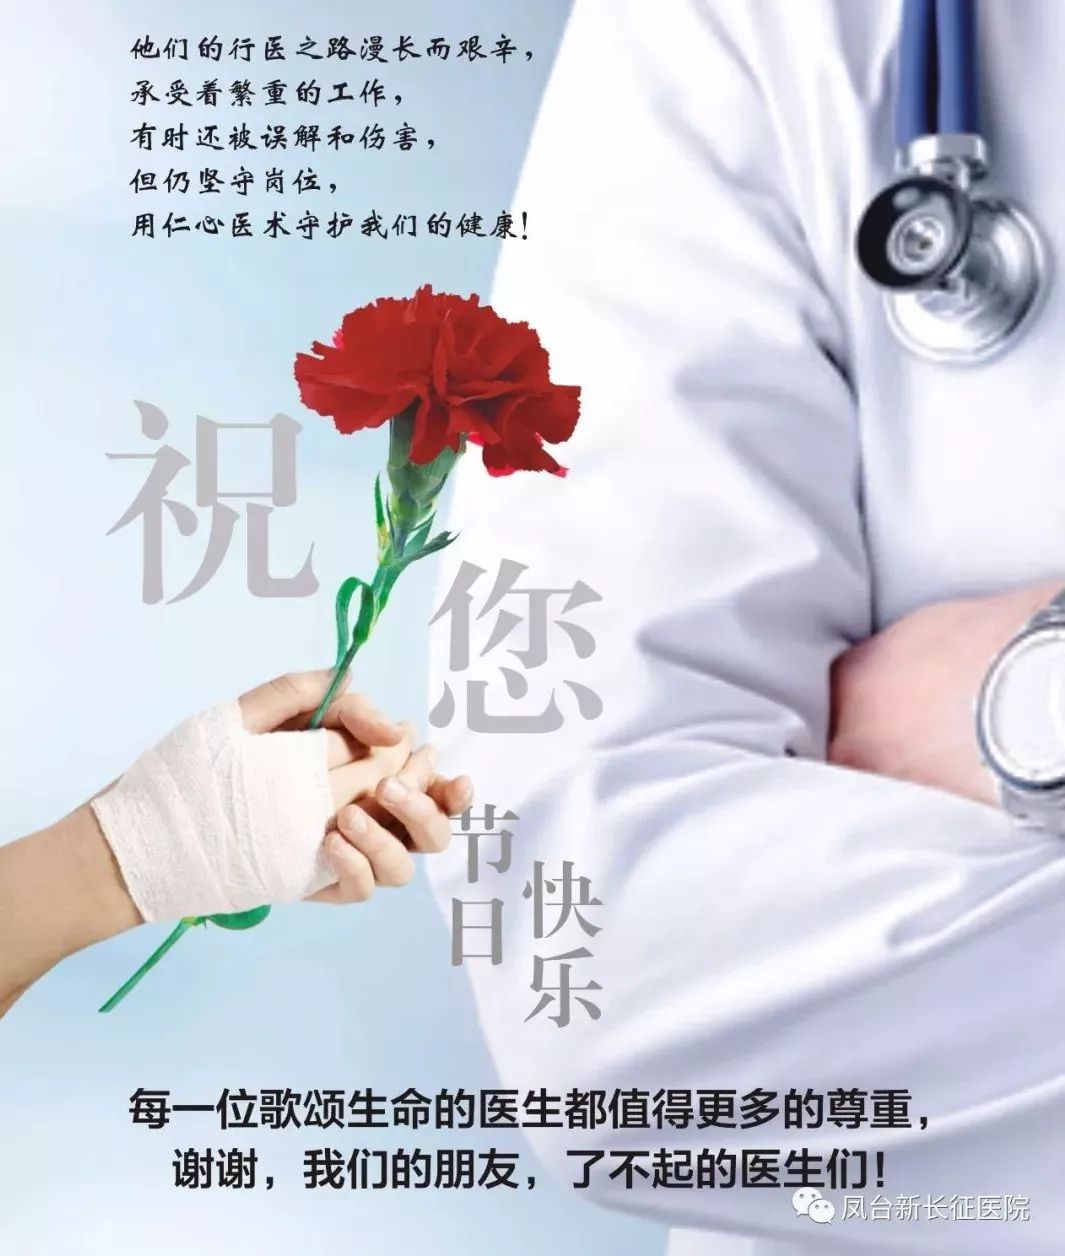 凤台县新长征医院 — 热烈庆祝首届"中国医师节"